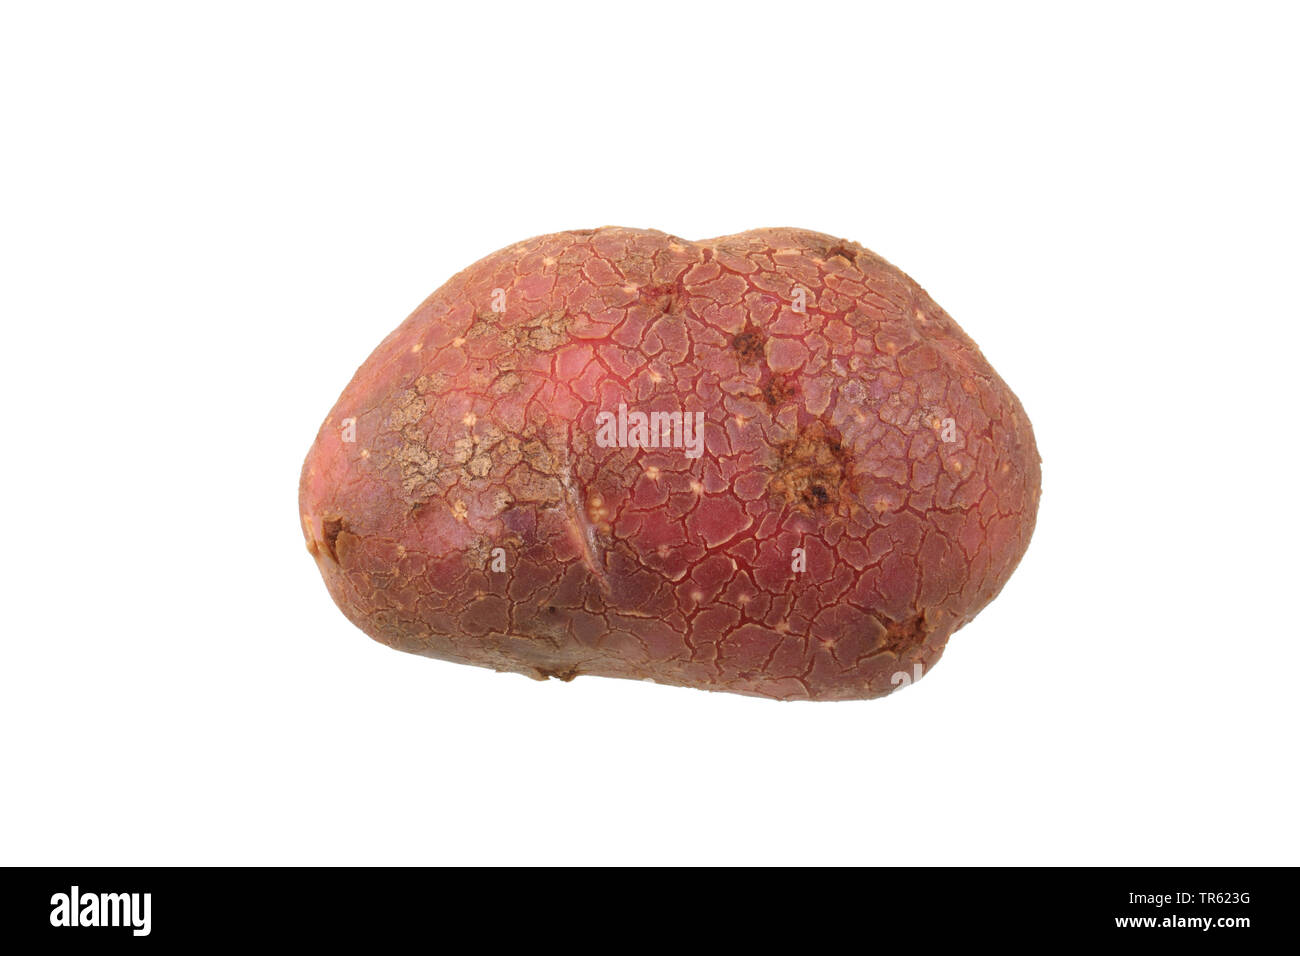 La pomme de terre (Solanum tuberosum Highland Bourgogne Rouge), la pomme de terre du cultivar Highland Bourgogne rouge, dentelle Banque D'Images